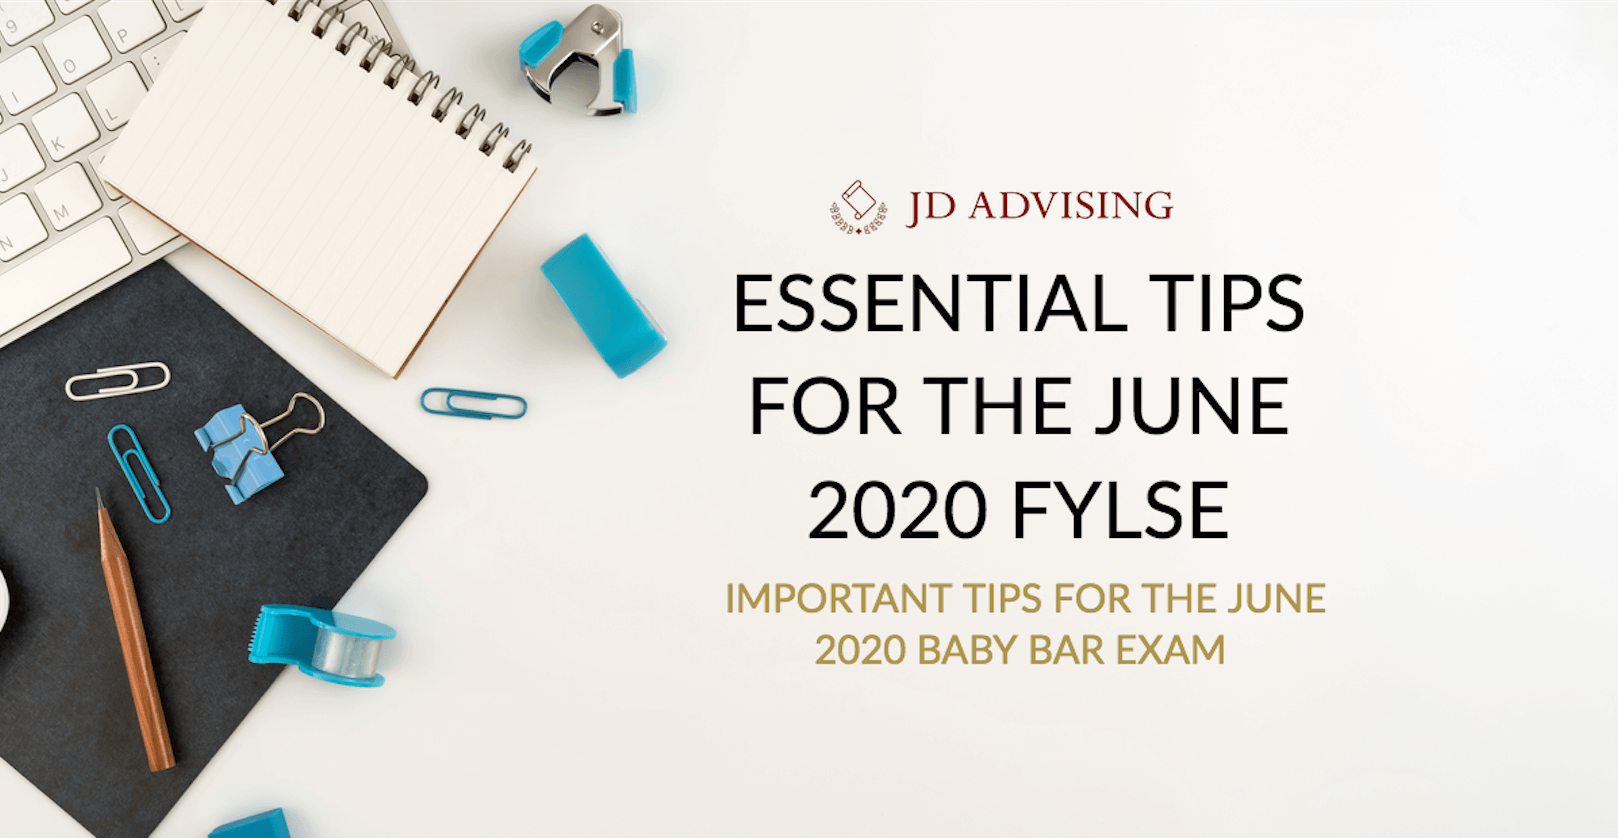 tips for the june 2020 fylse, june 2020 baby bar